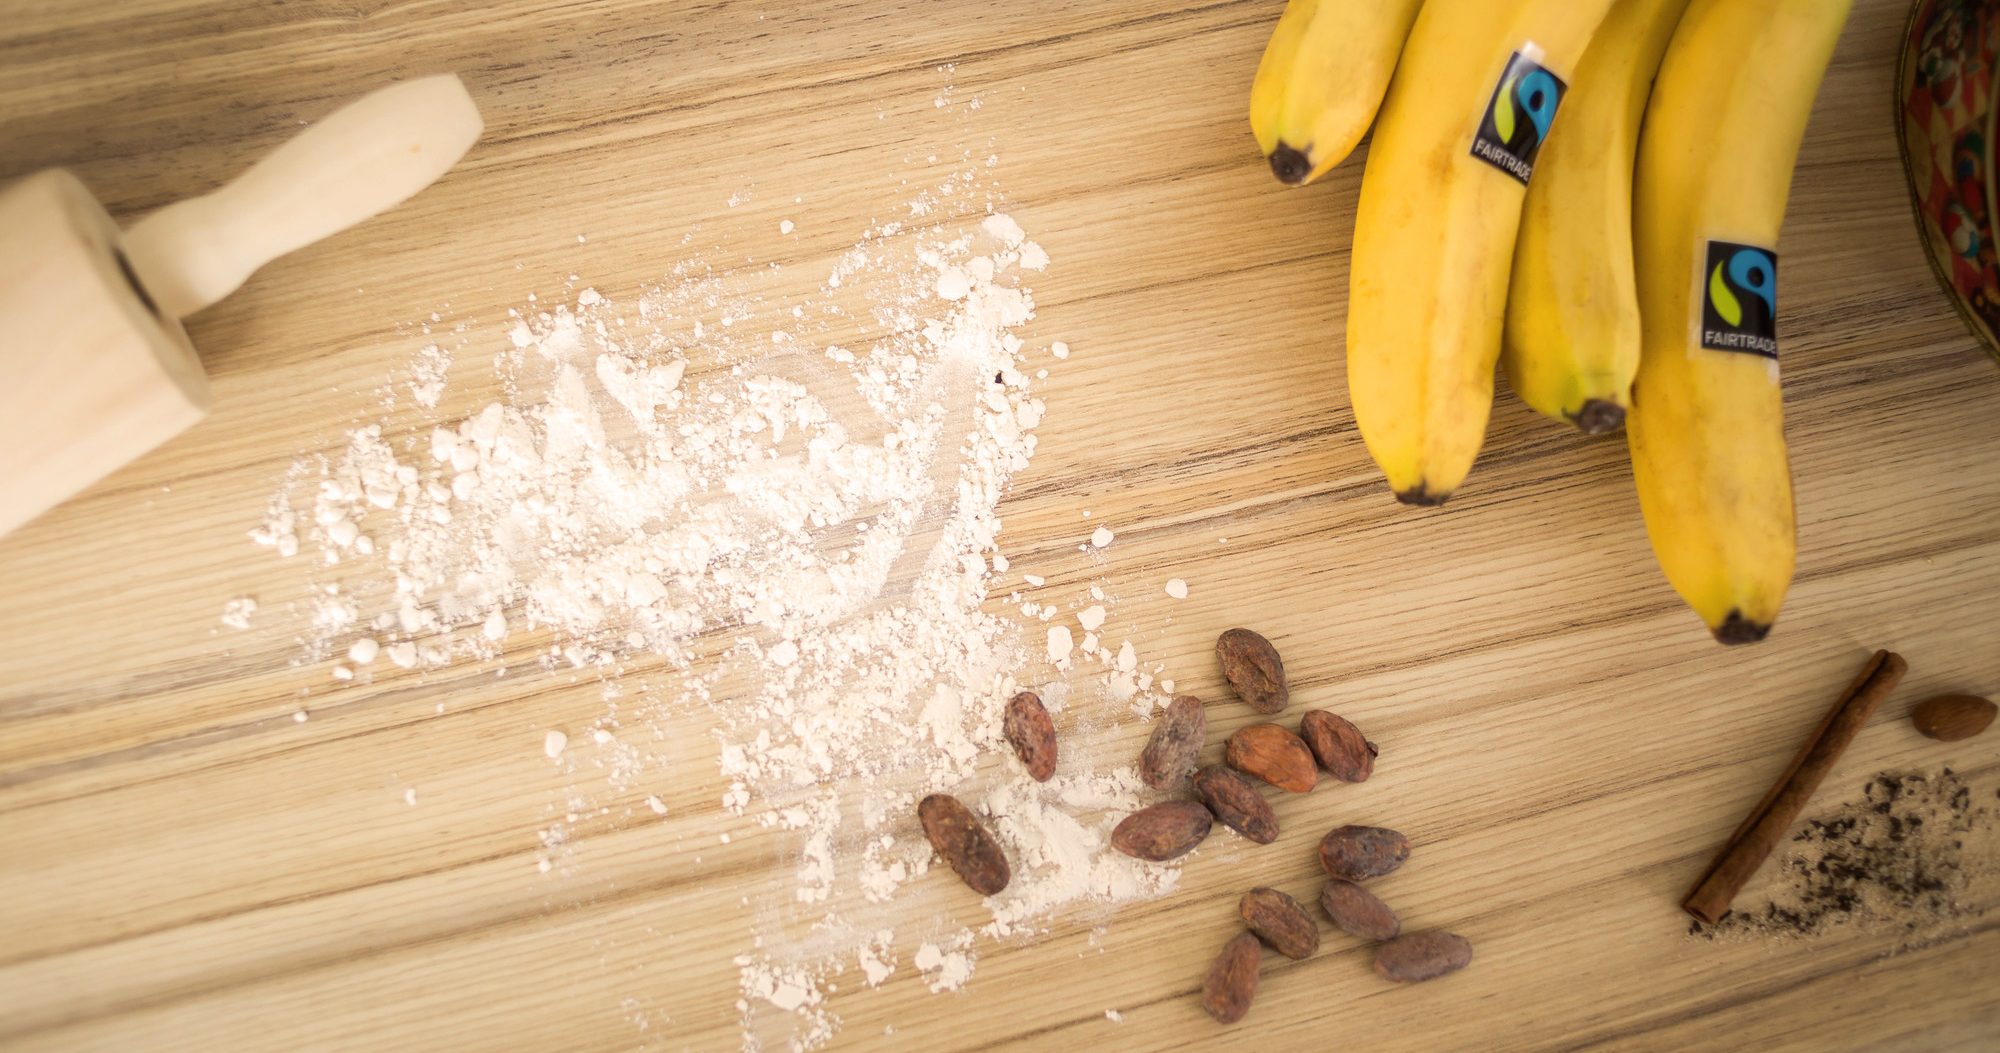 Fairtrade certified baking supplies - cocoa beans, bananas, cinnamon and more.